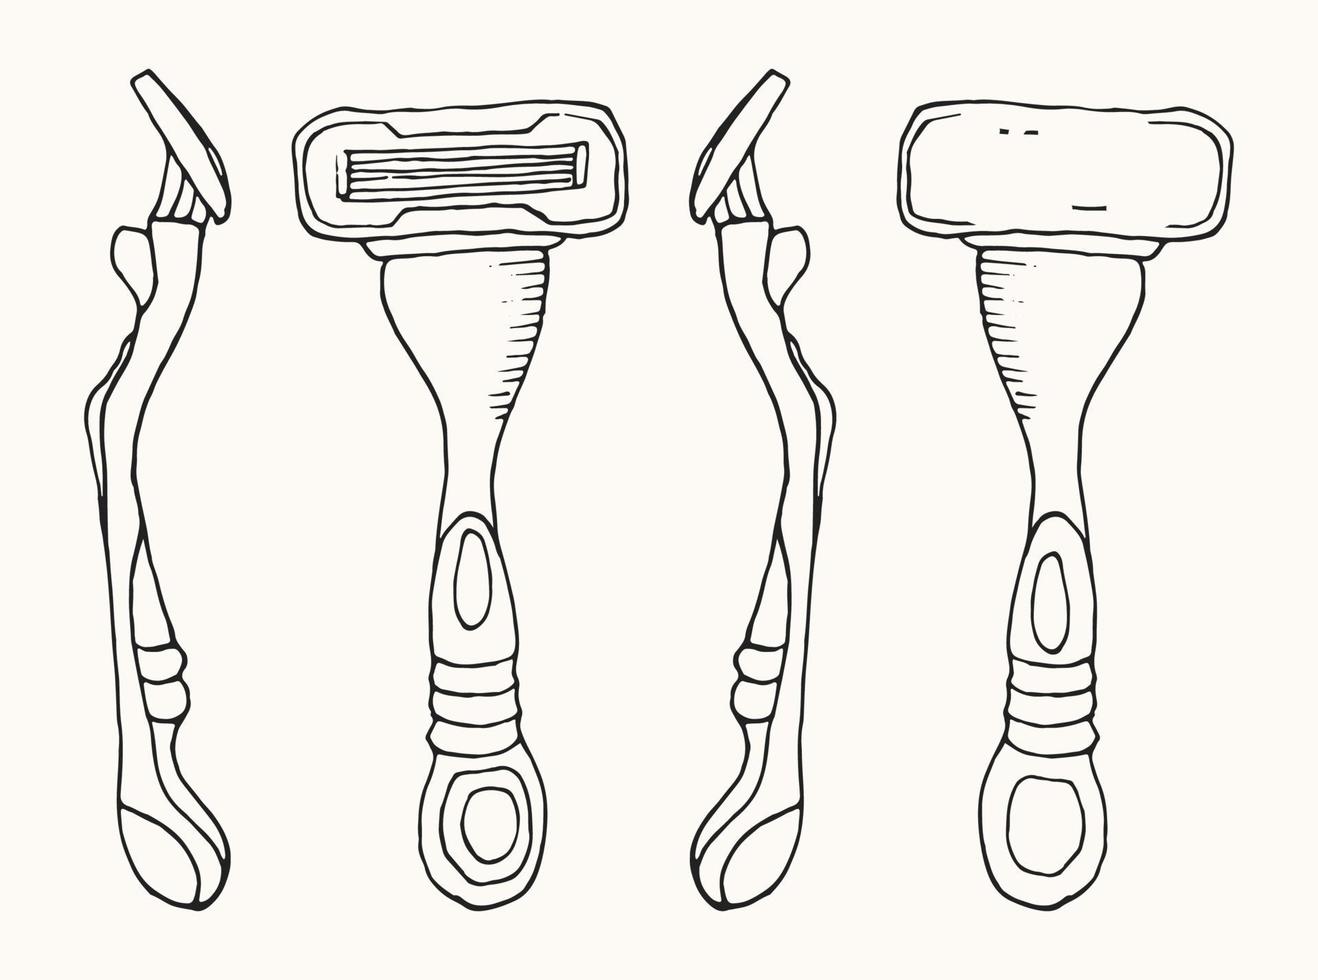 Rasiermesser in verschiedenen Winkeln. handgezeichnete doodle illustration vektor